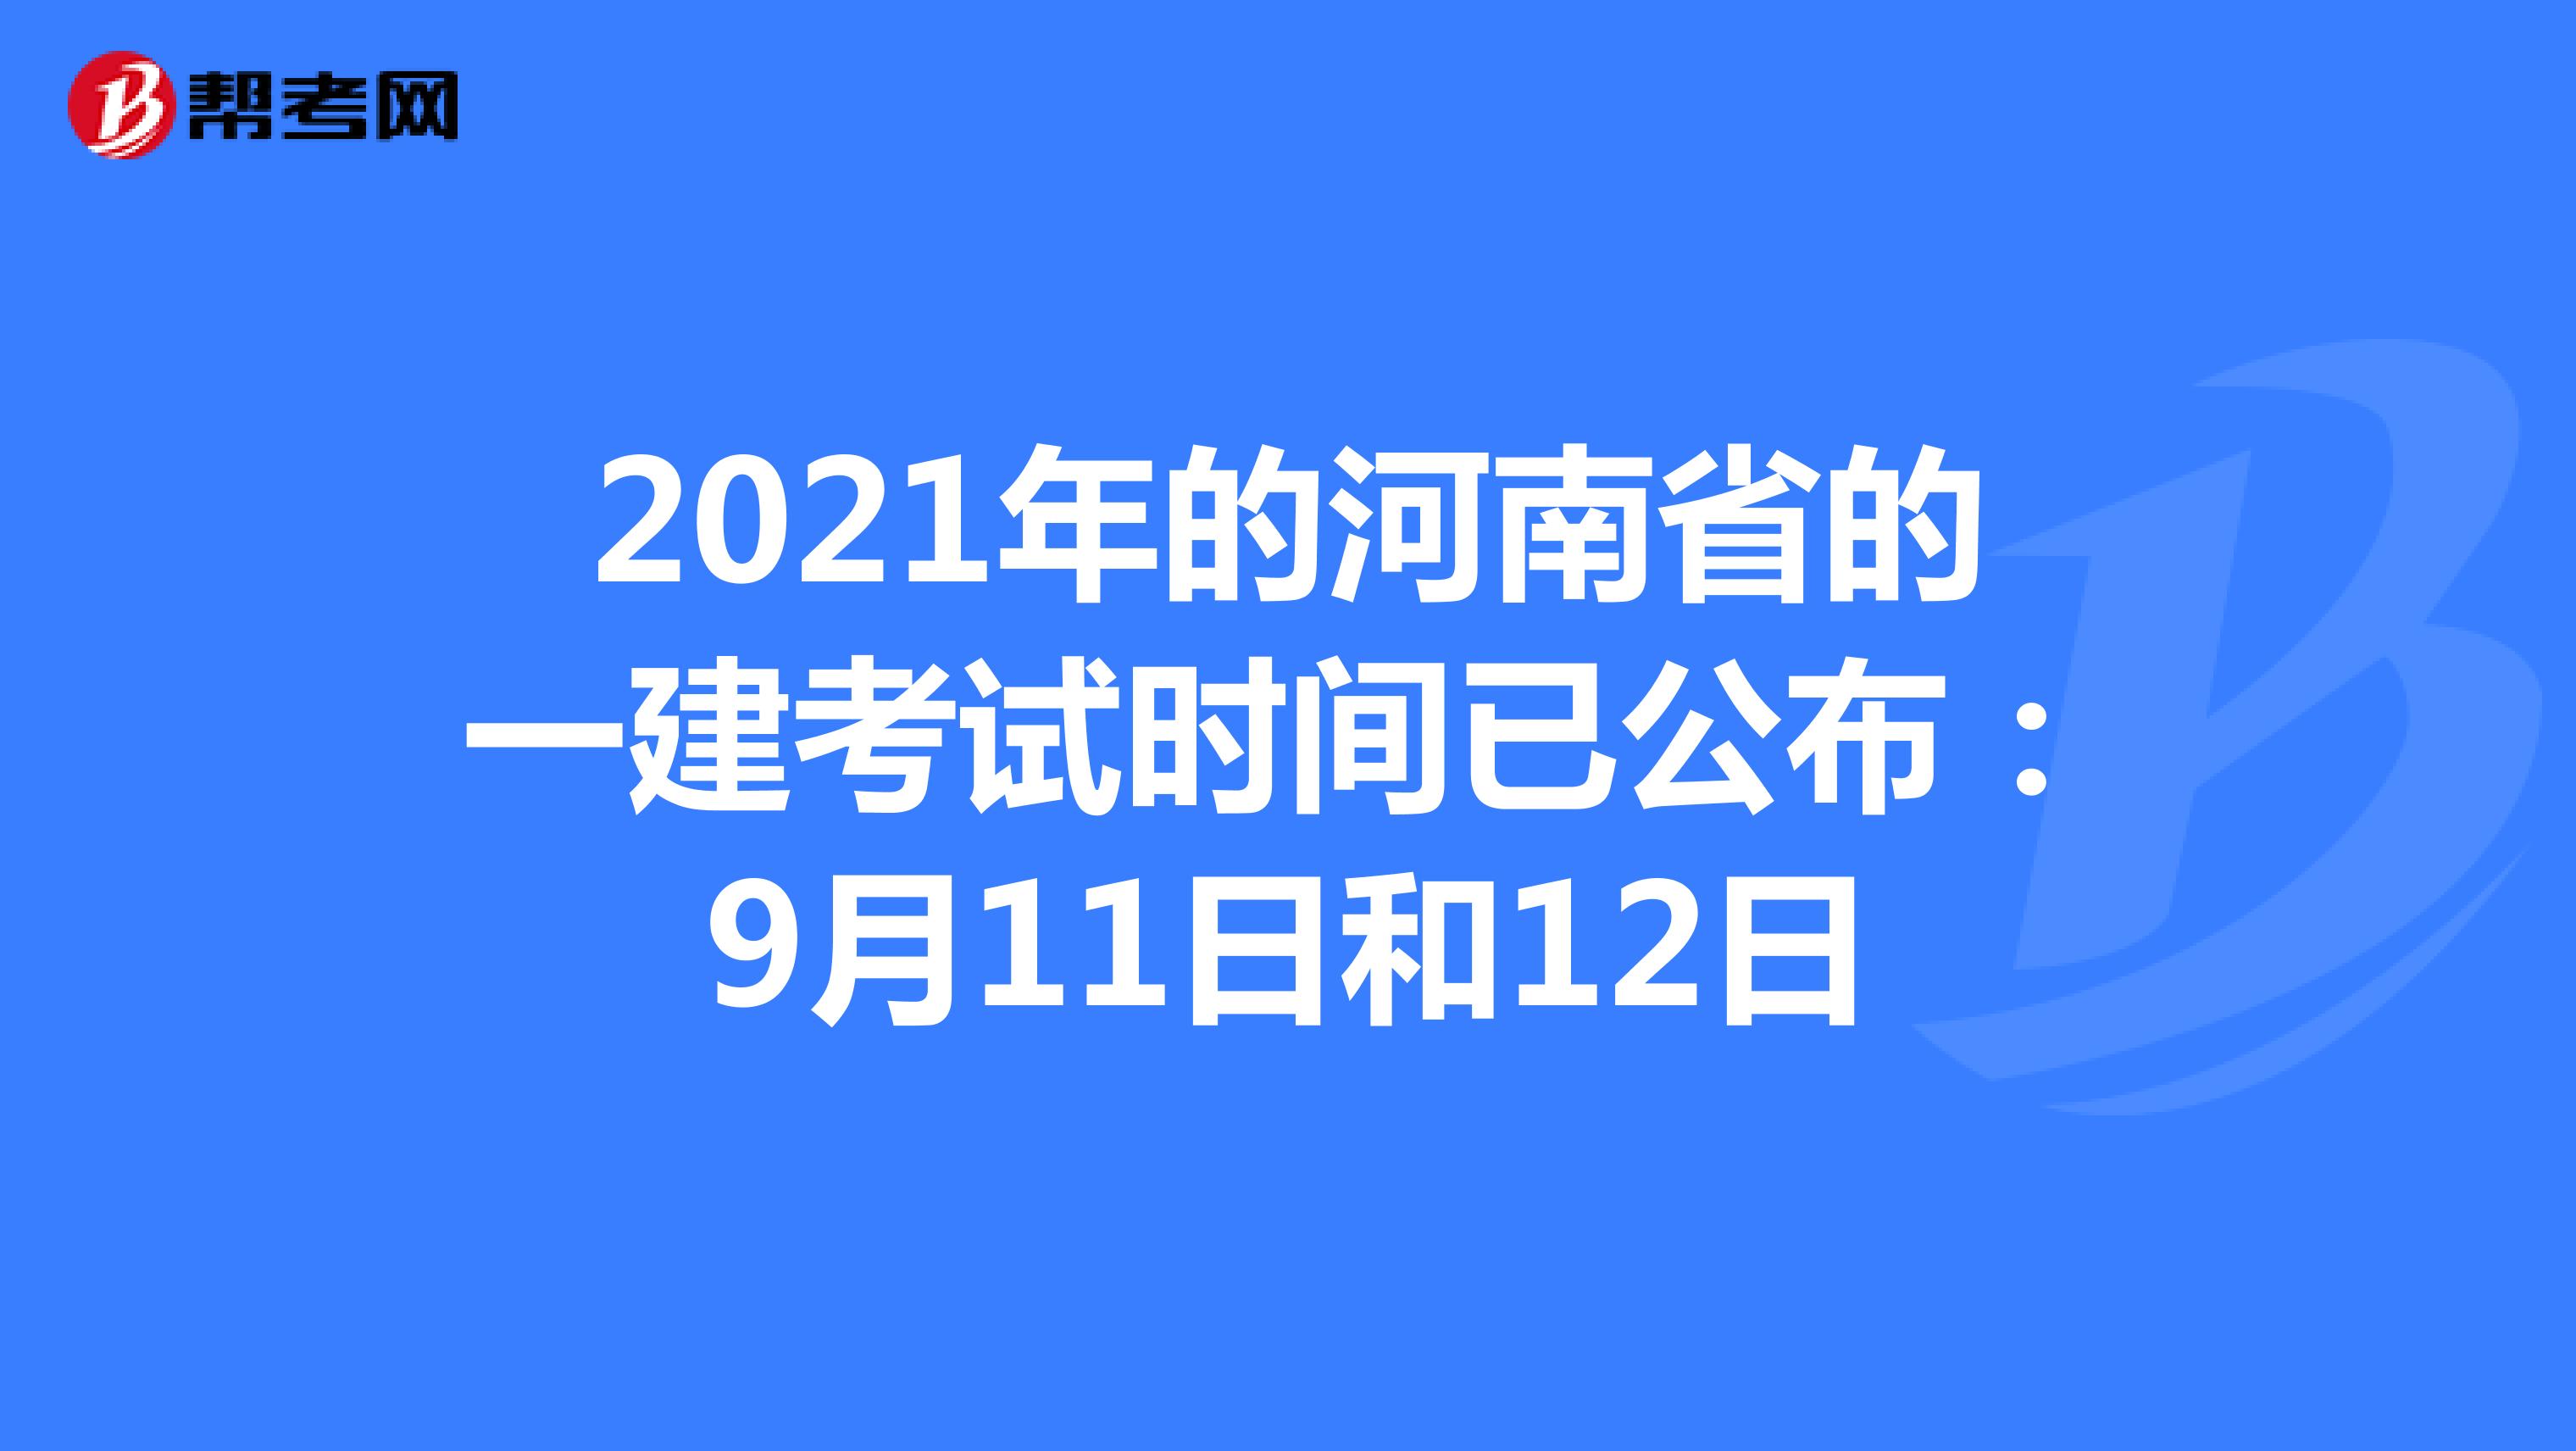 2021年的河南省的一建考试时间已公布：9月11日和12日